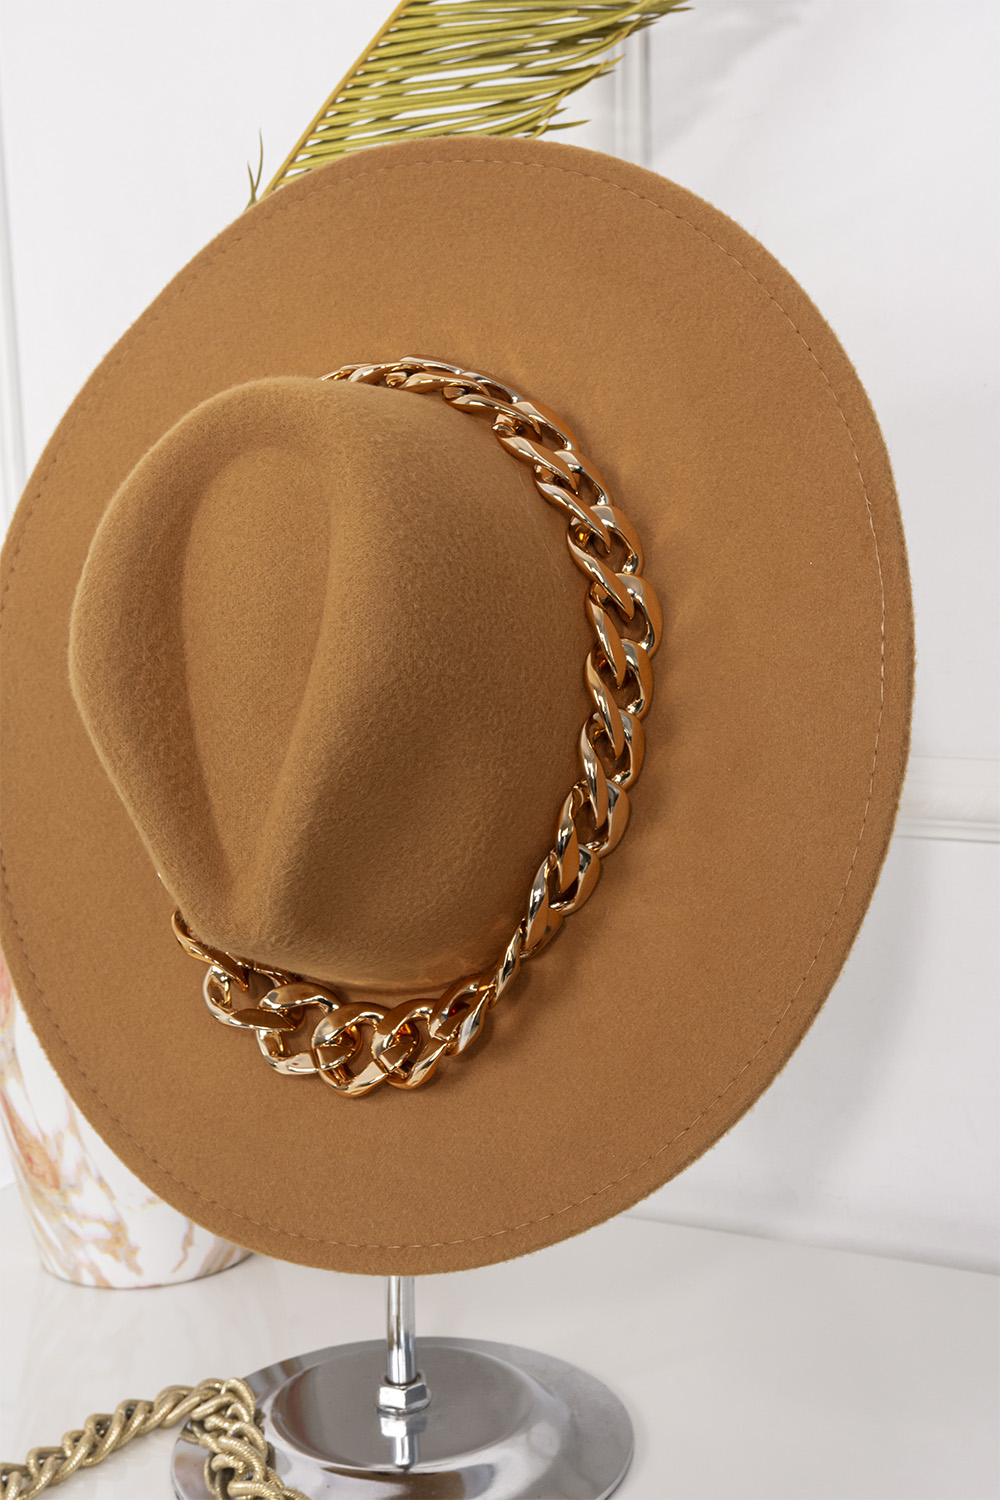 Γυναικείο καπέλο με αλυσίδα - ΚΑΜΕΛ